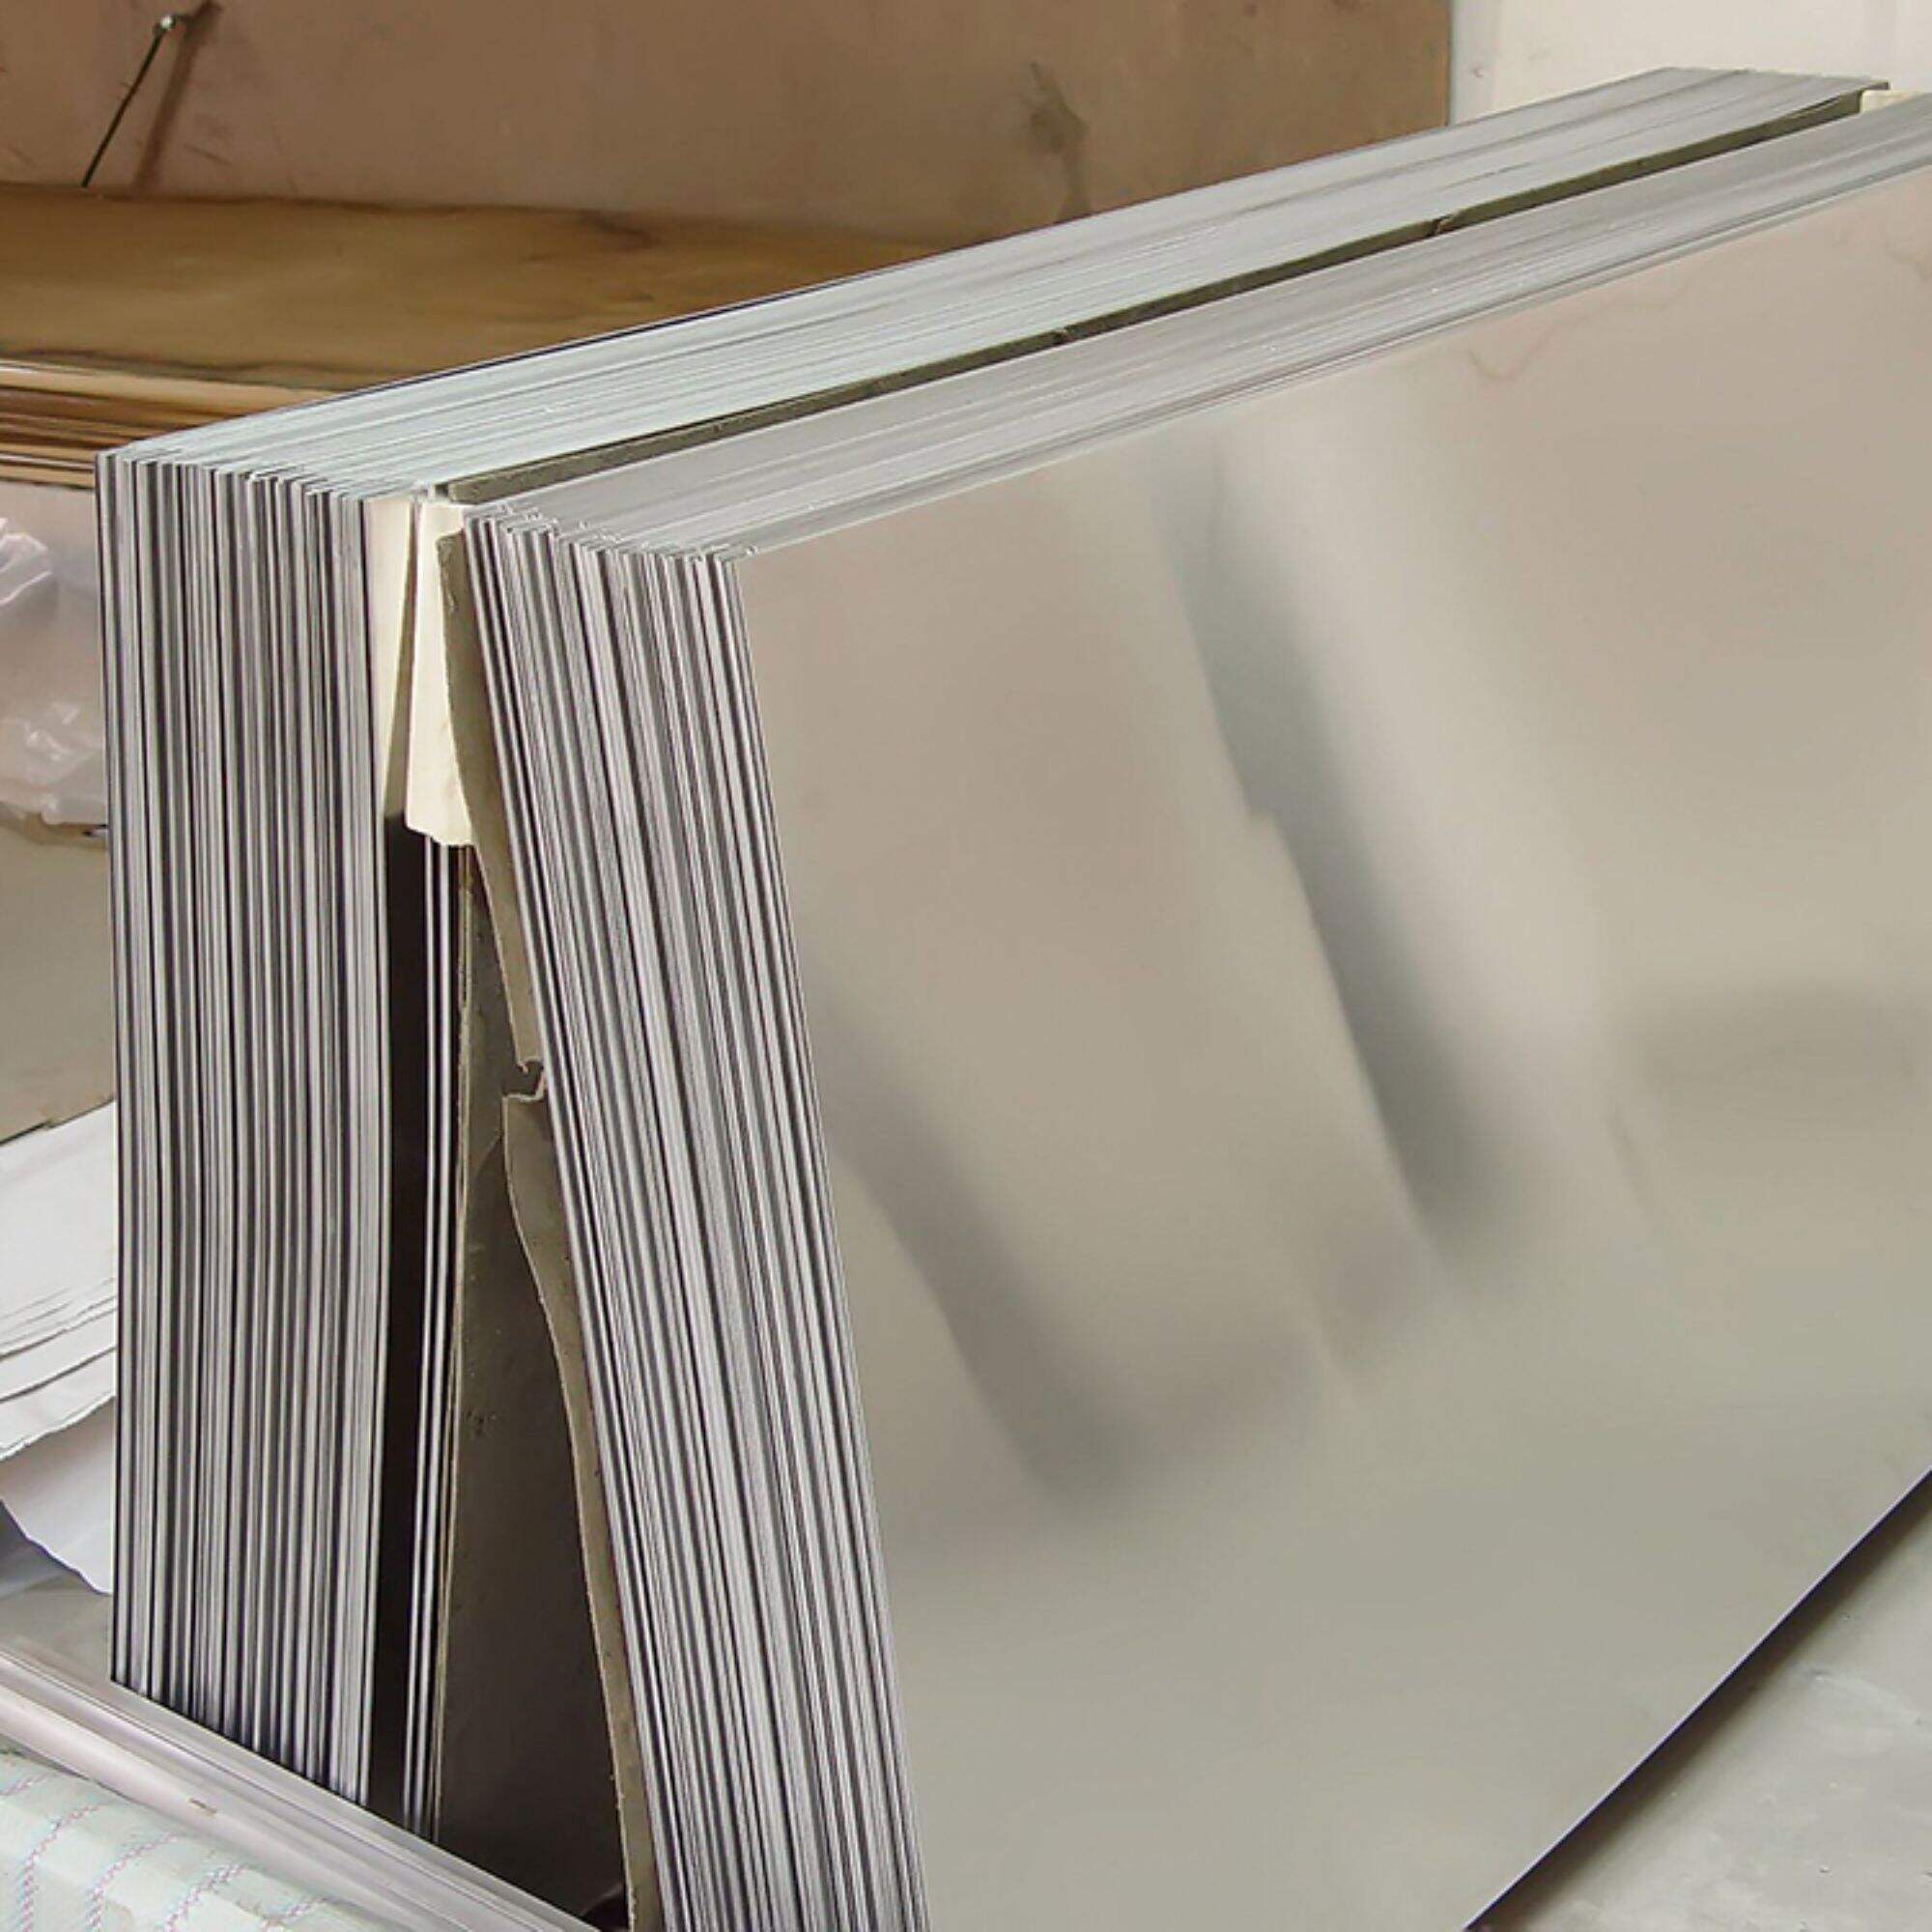 Sublimation Aluminum Sheet 1050 1060 5754 3003 5005 5052 5083 6061 6063 7075 H26 T6 Aluminum Sheet Strip Coil Plate Foil Roll